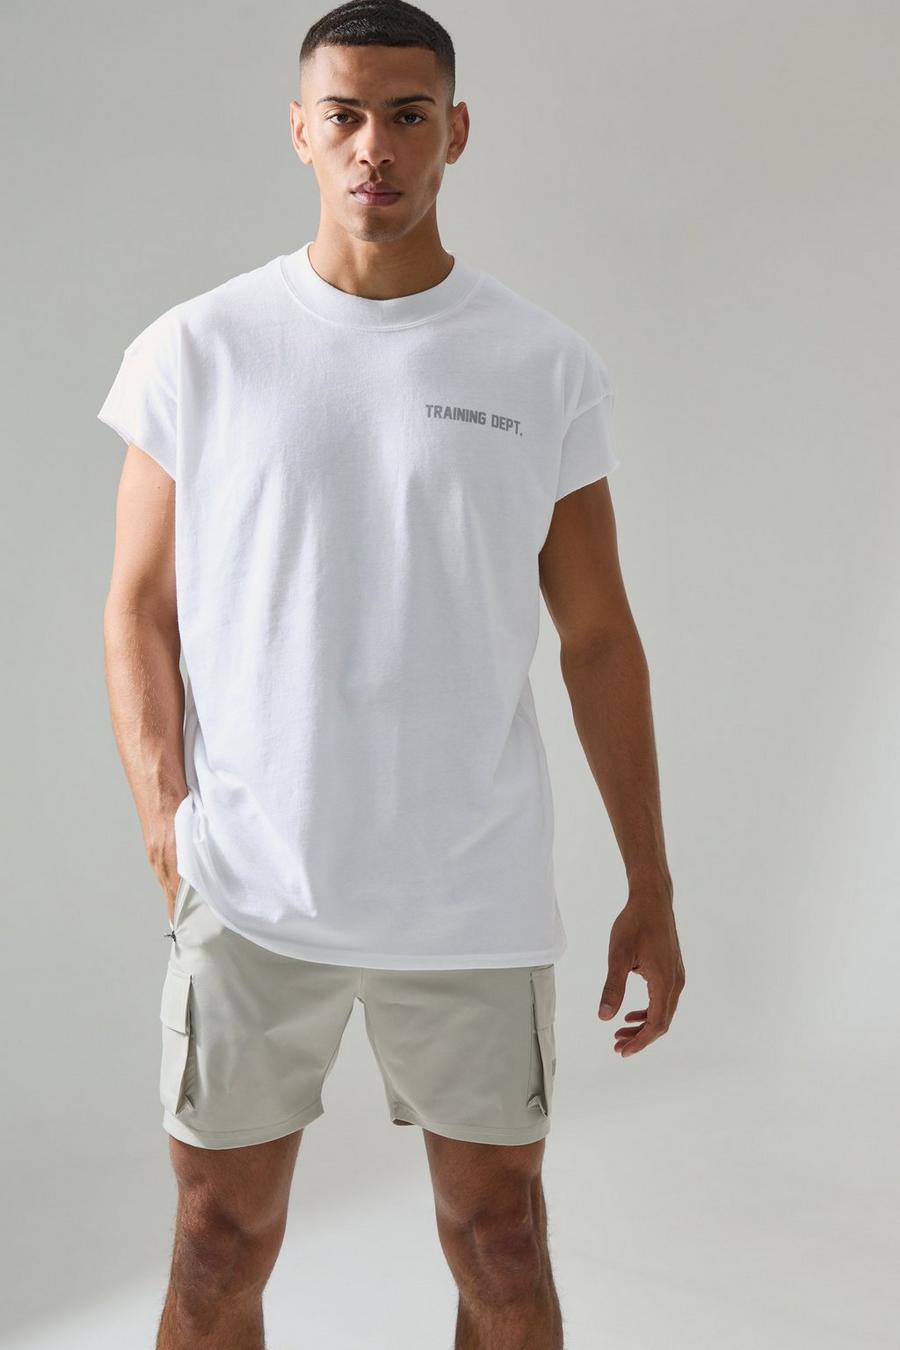 White Active Oversized Cut Off Training Dept T-Shirt Met Brede Nek